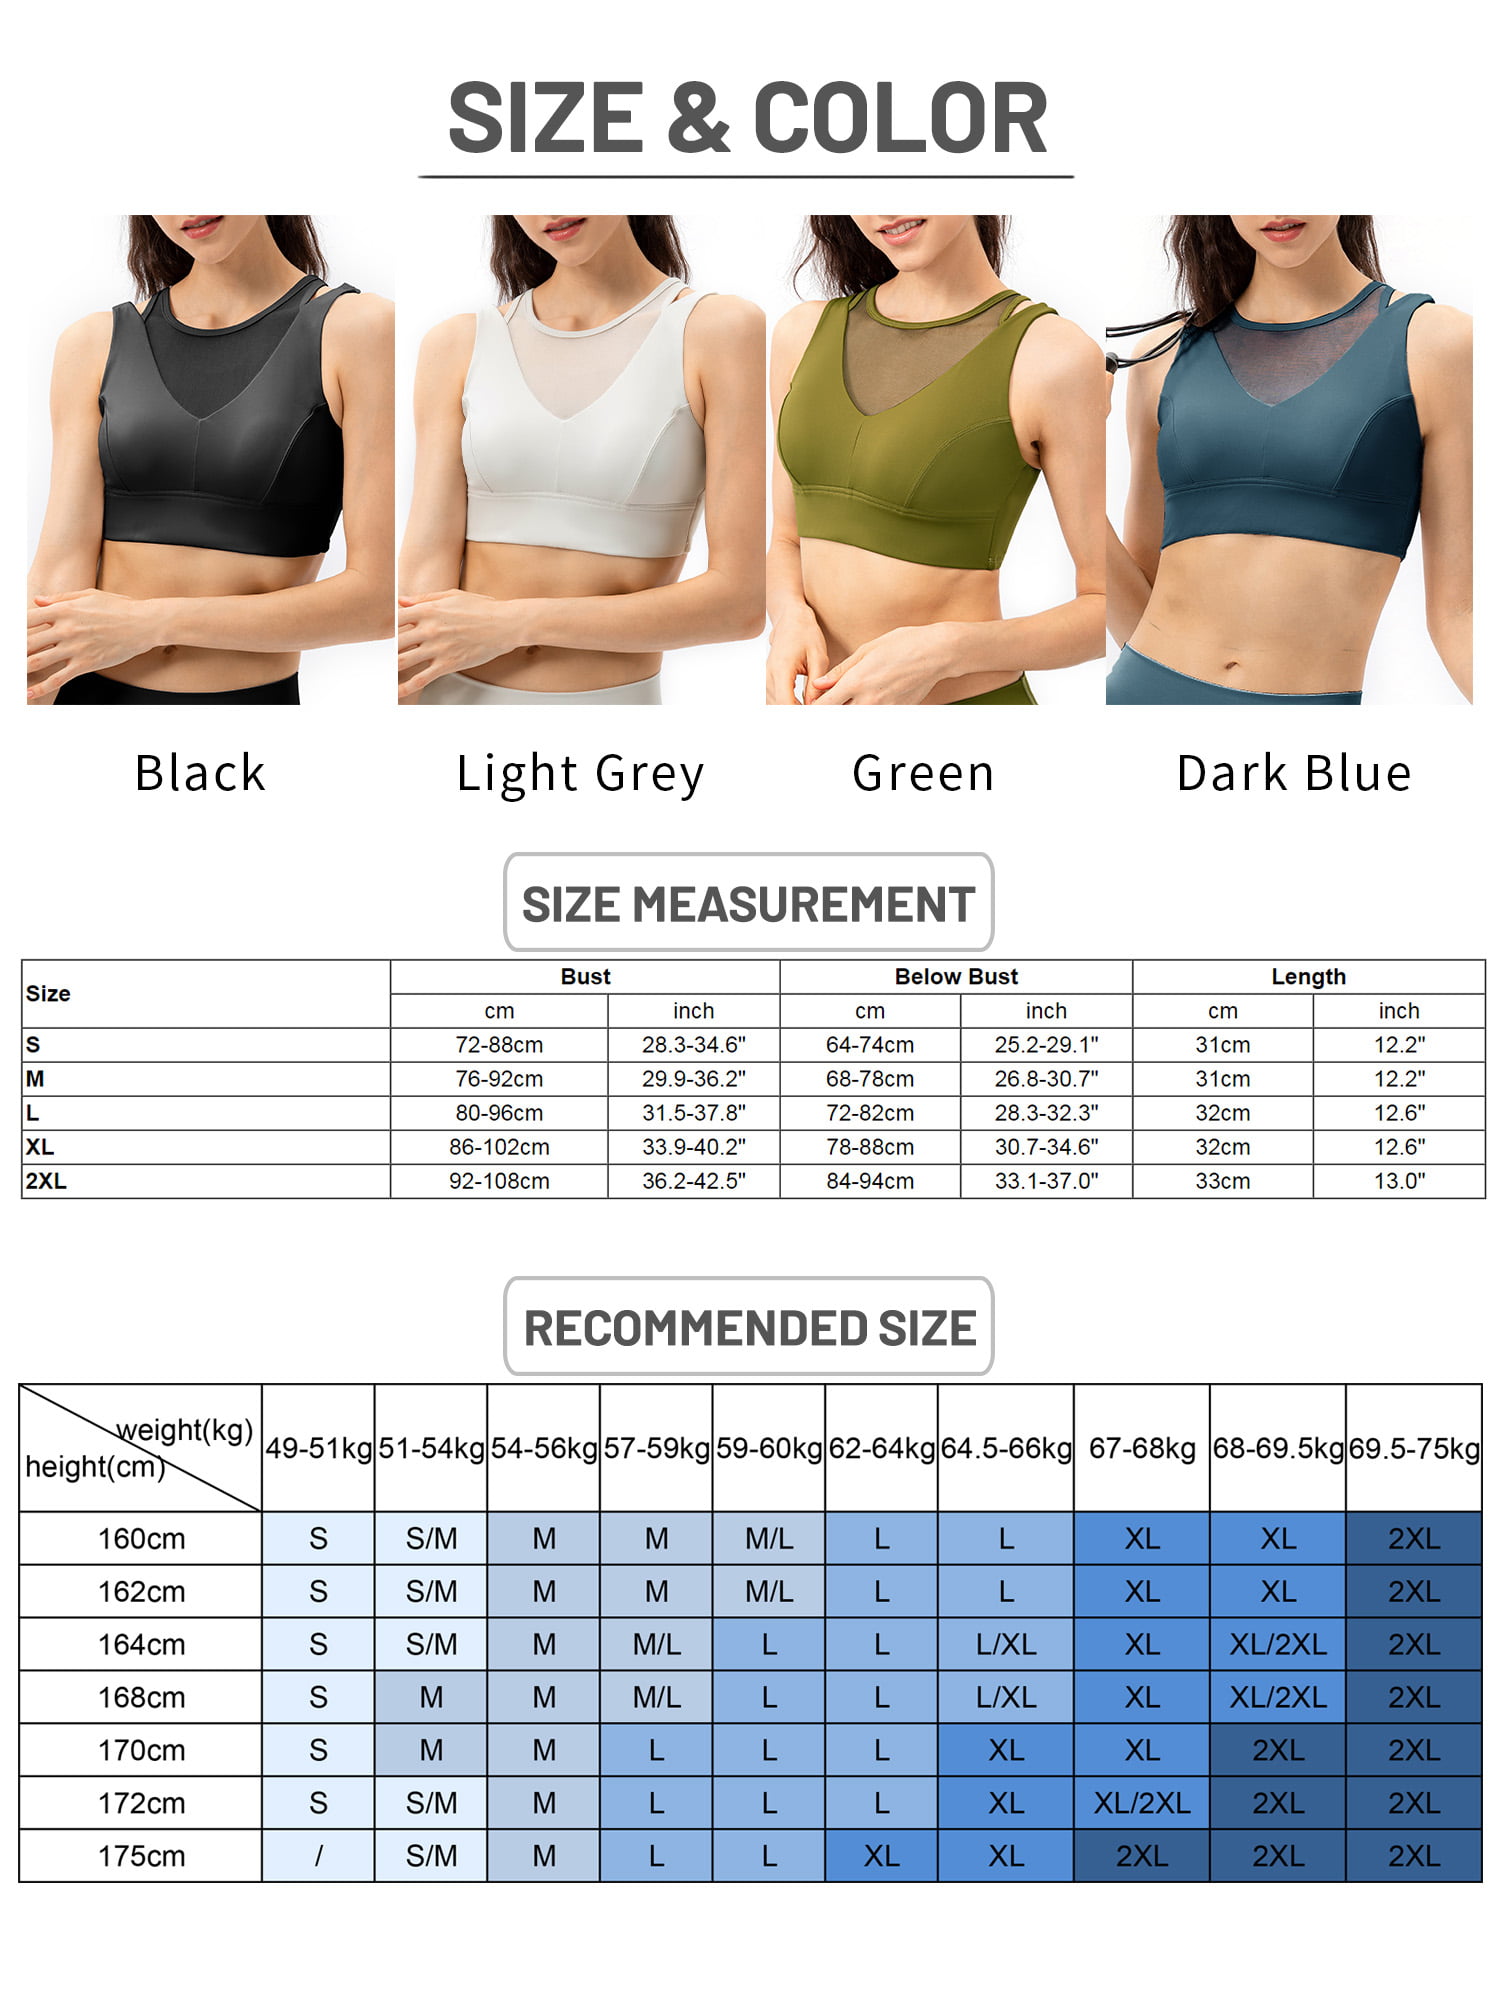 Buy buzhi Women Lace Bra Front Closure No Underwire Plus Size Bras